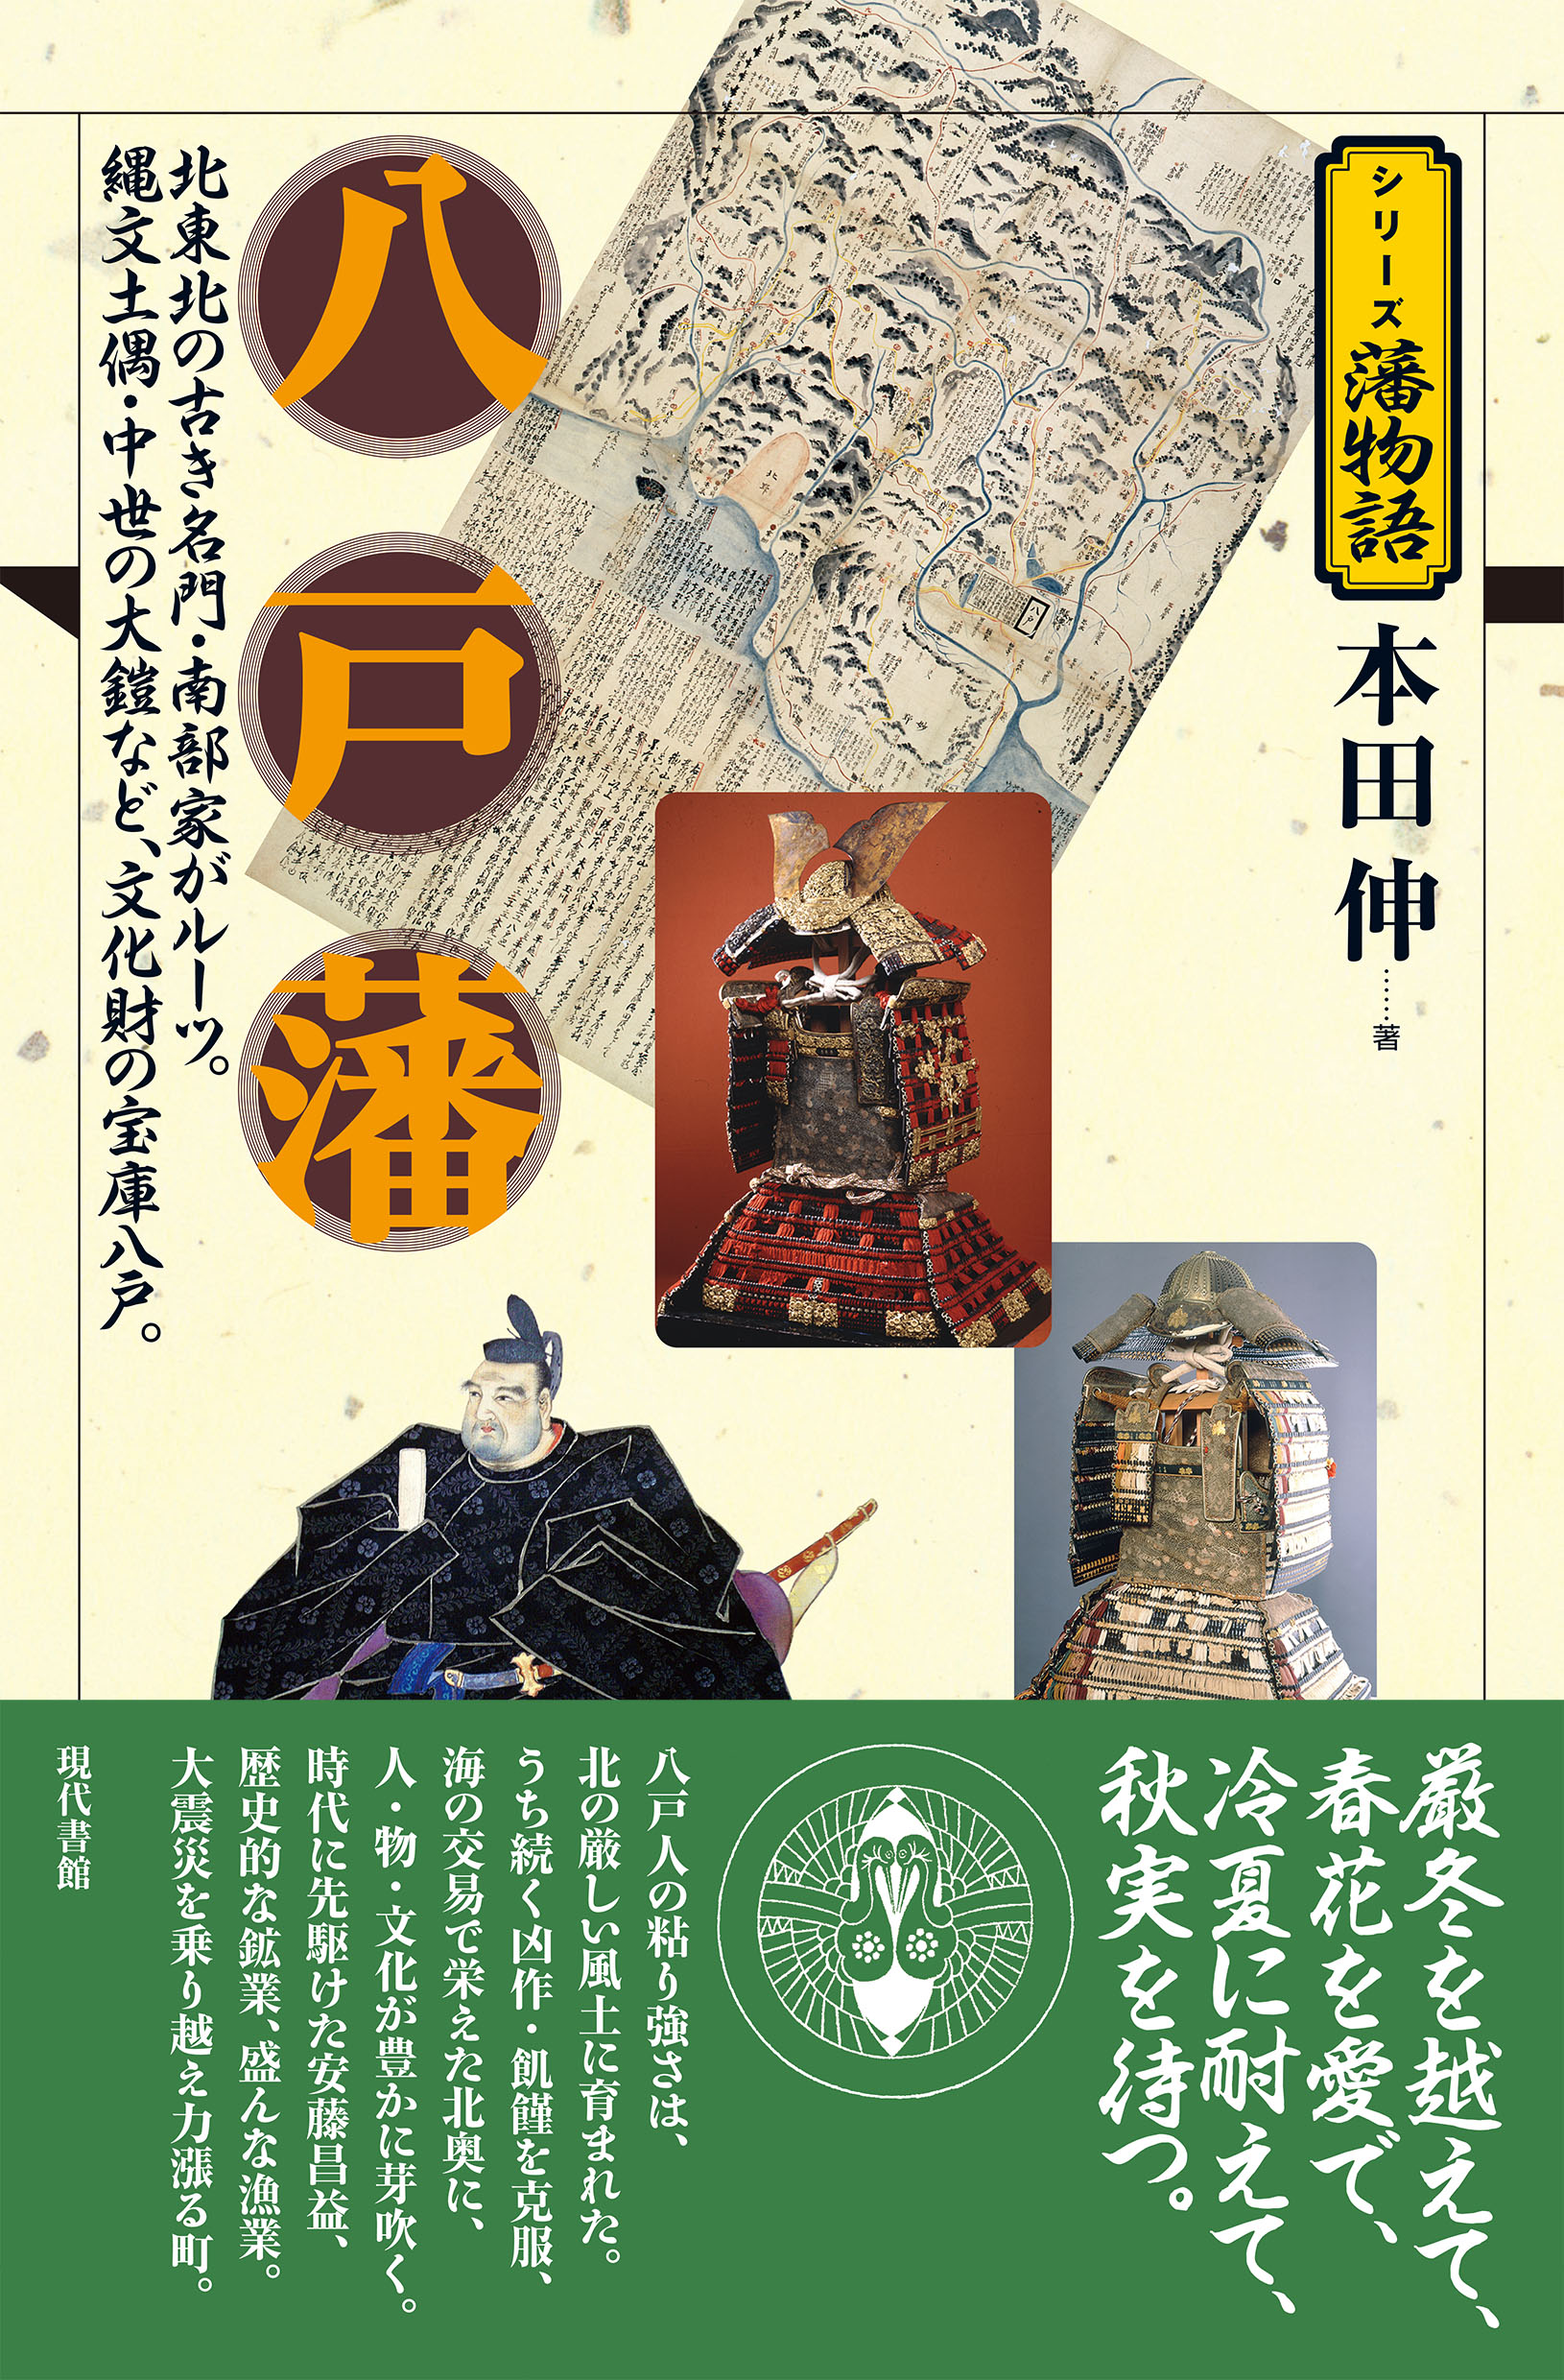 八戸藩の商品画像